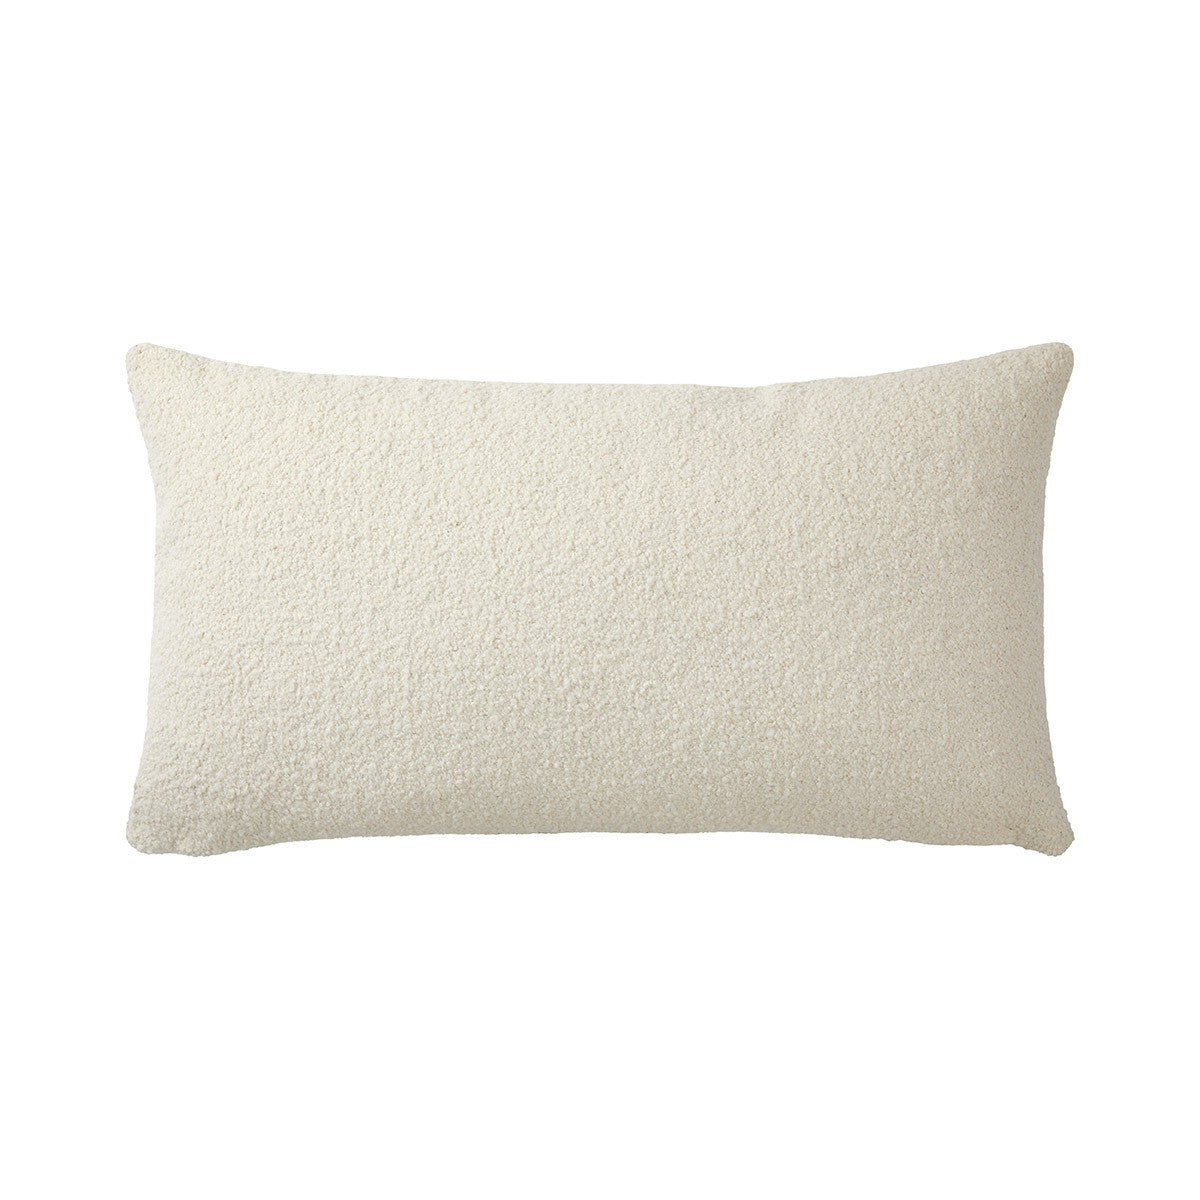 Bouclette  Decorative Pillow